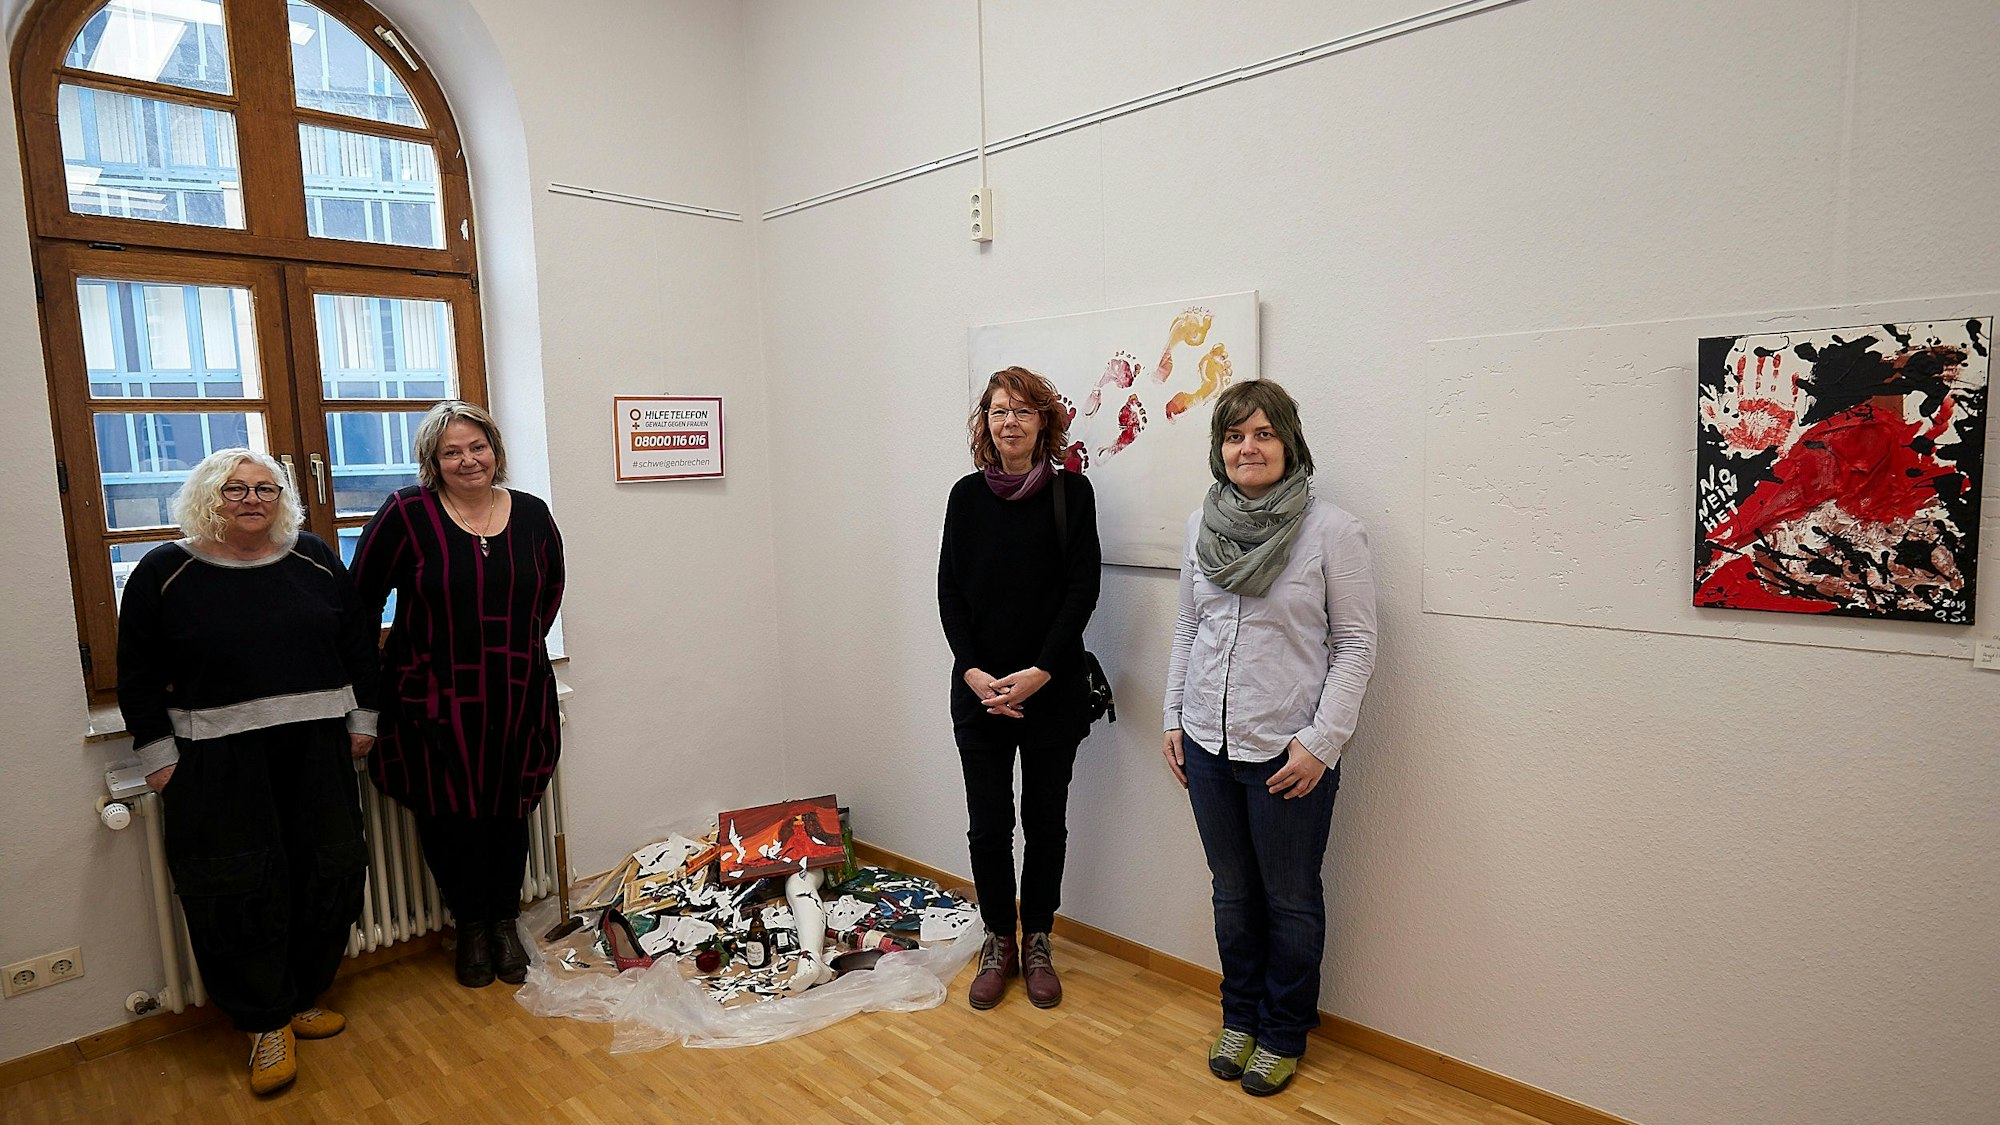 Bilder in der Galerie Eifel Kunst werden gezeigt sowie wie vier Frauen neben einem Kunstwerk über hausliche Gewalt.